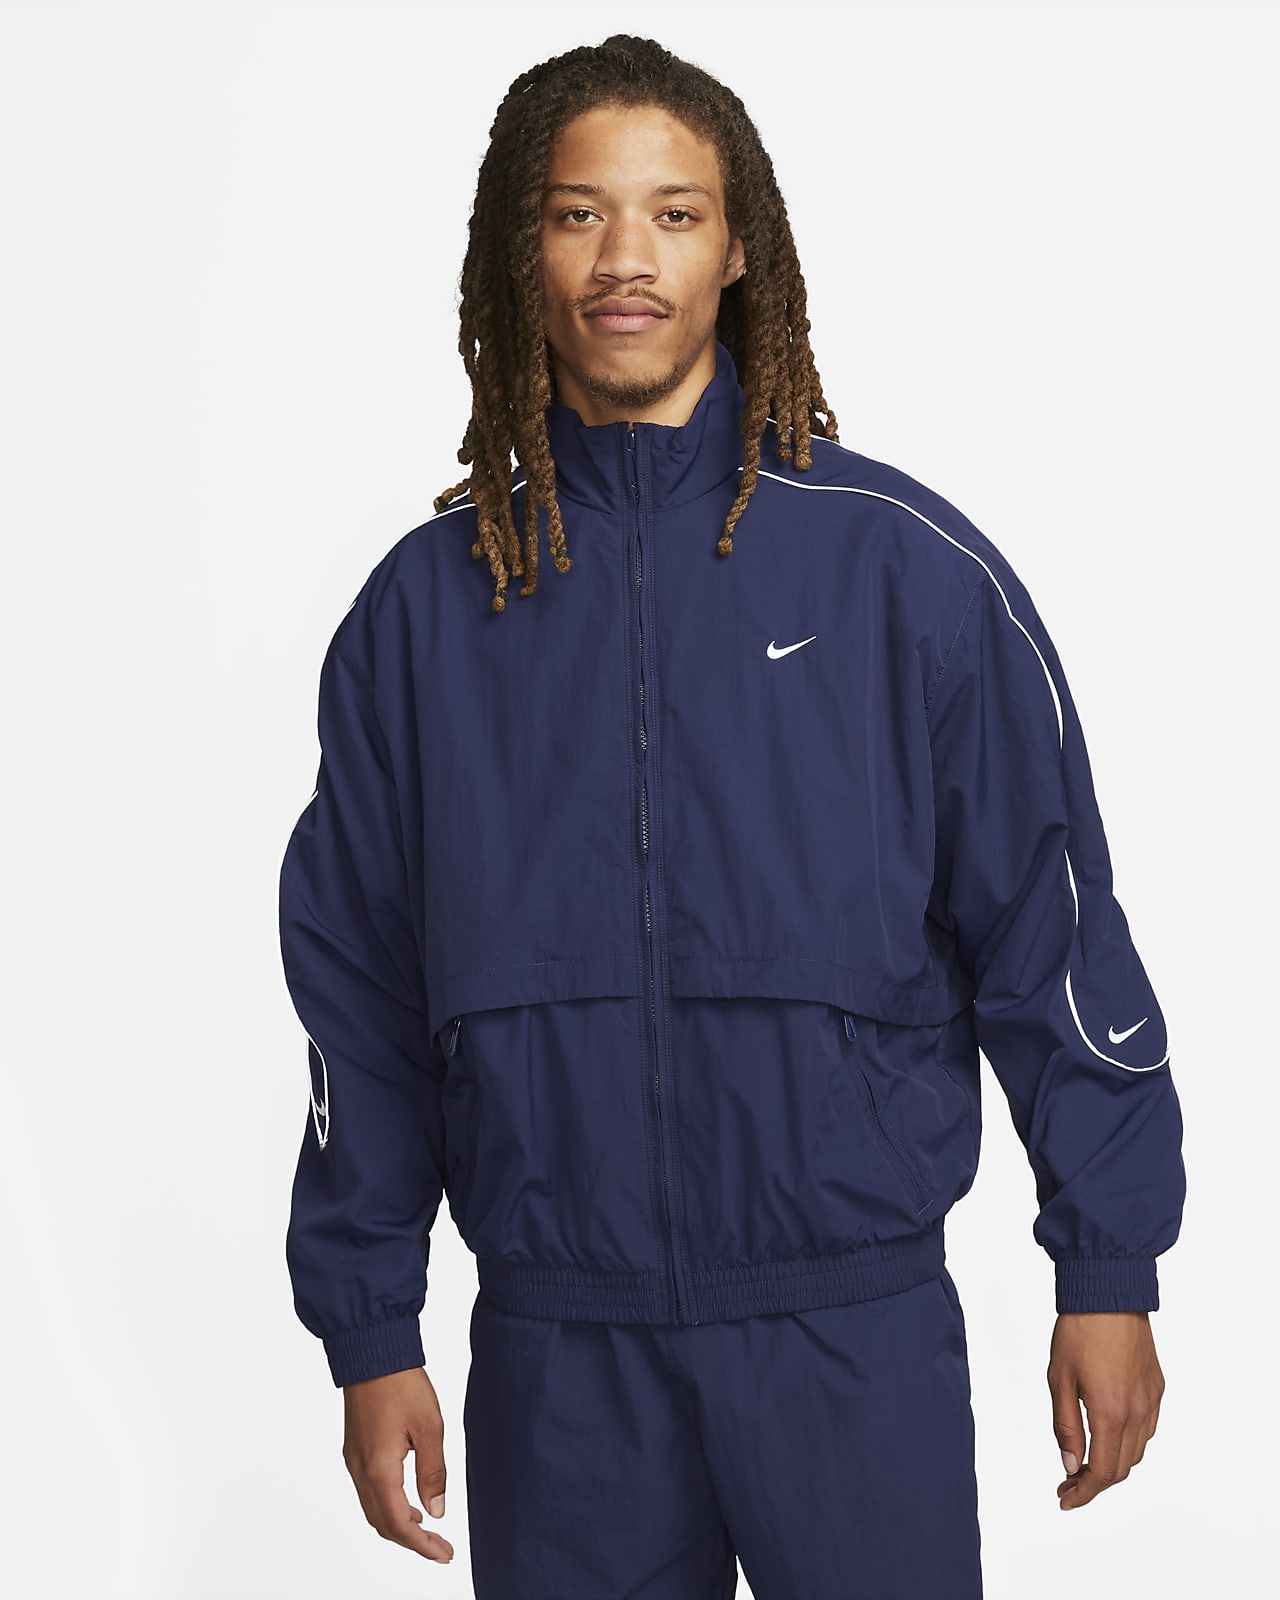 Dicht Handvol koppeling Nike Sportswear Solo Swoosh Men's Woven Track Jacket. Nike.com